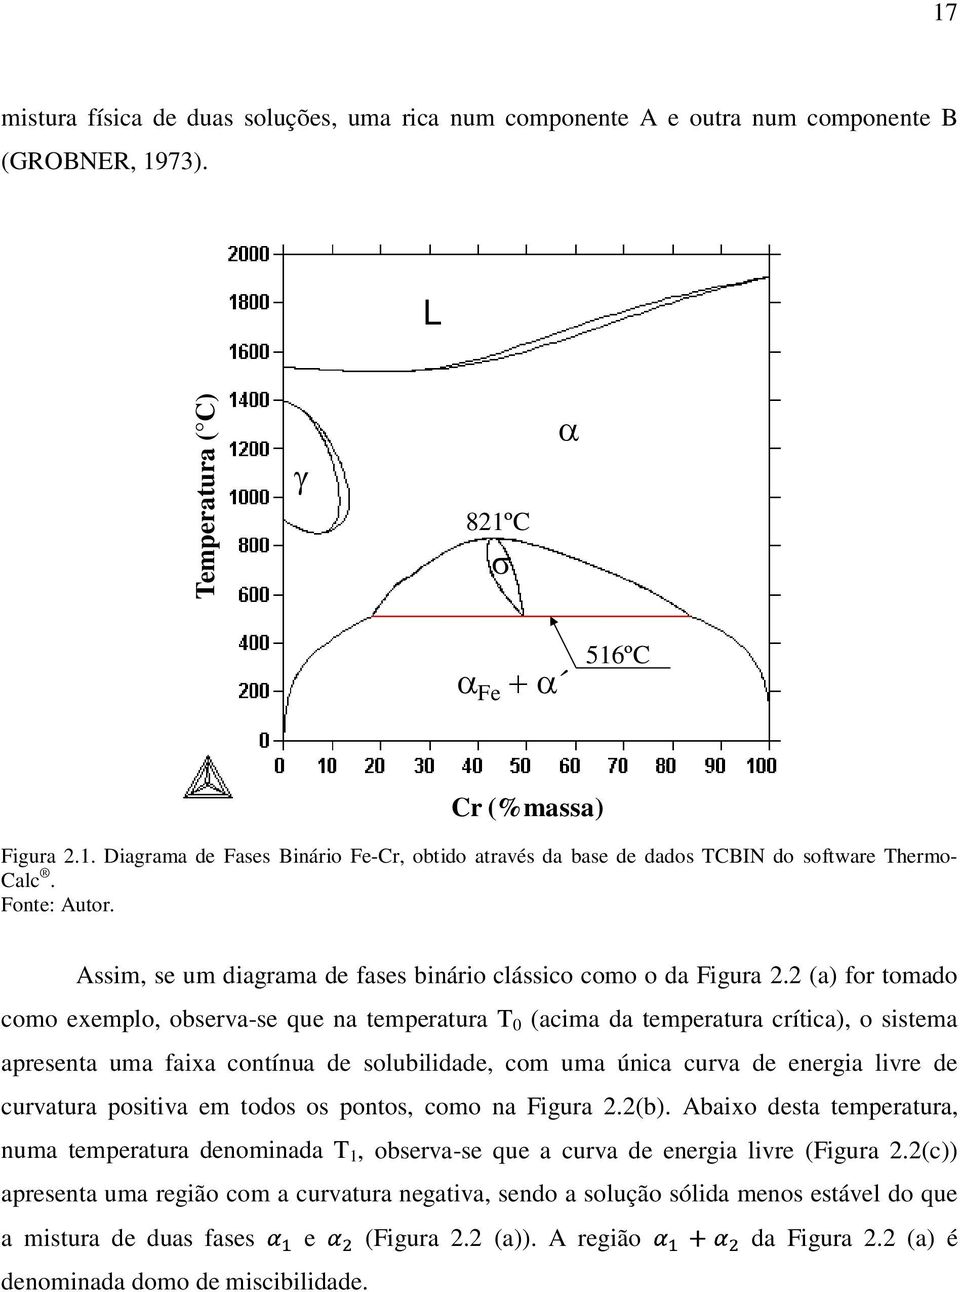 2 (a) for tomado como exemplo, observa-se que na temperatura T 0 (acima da temperatura crítica), o sistema apresenta uma faixa contínua de solubilidade, com uma única curva de energia livre de